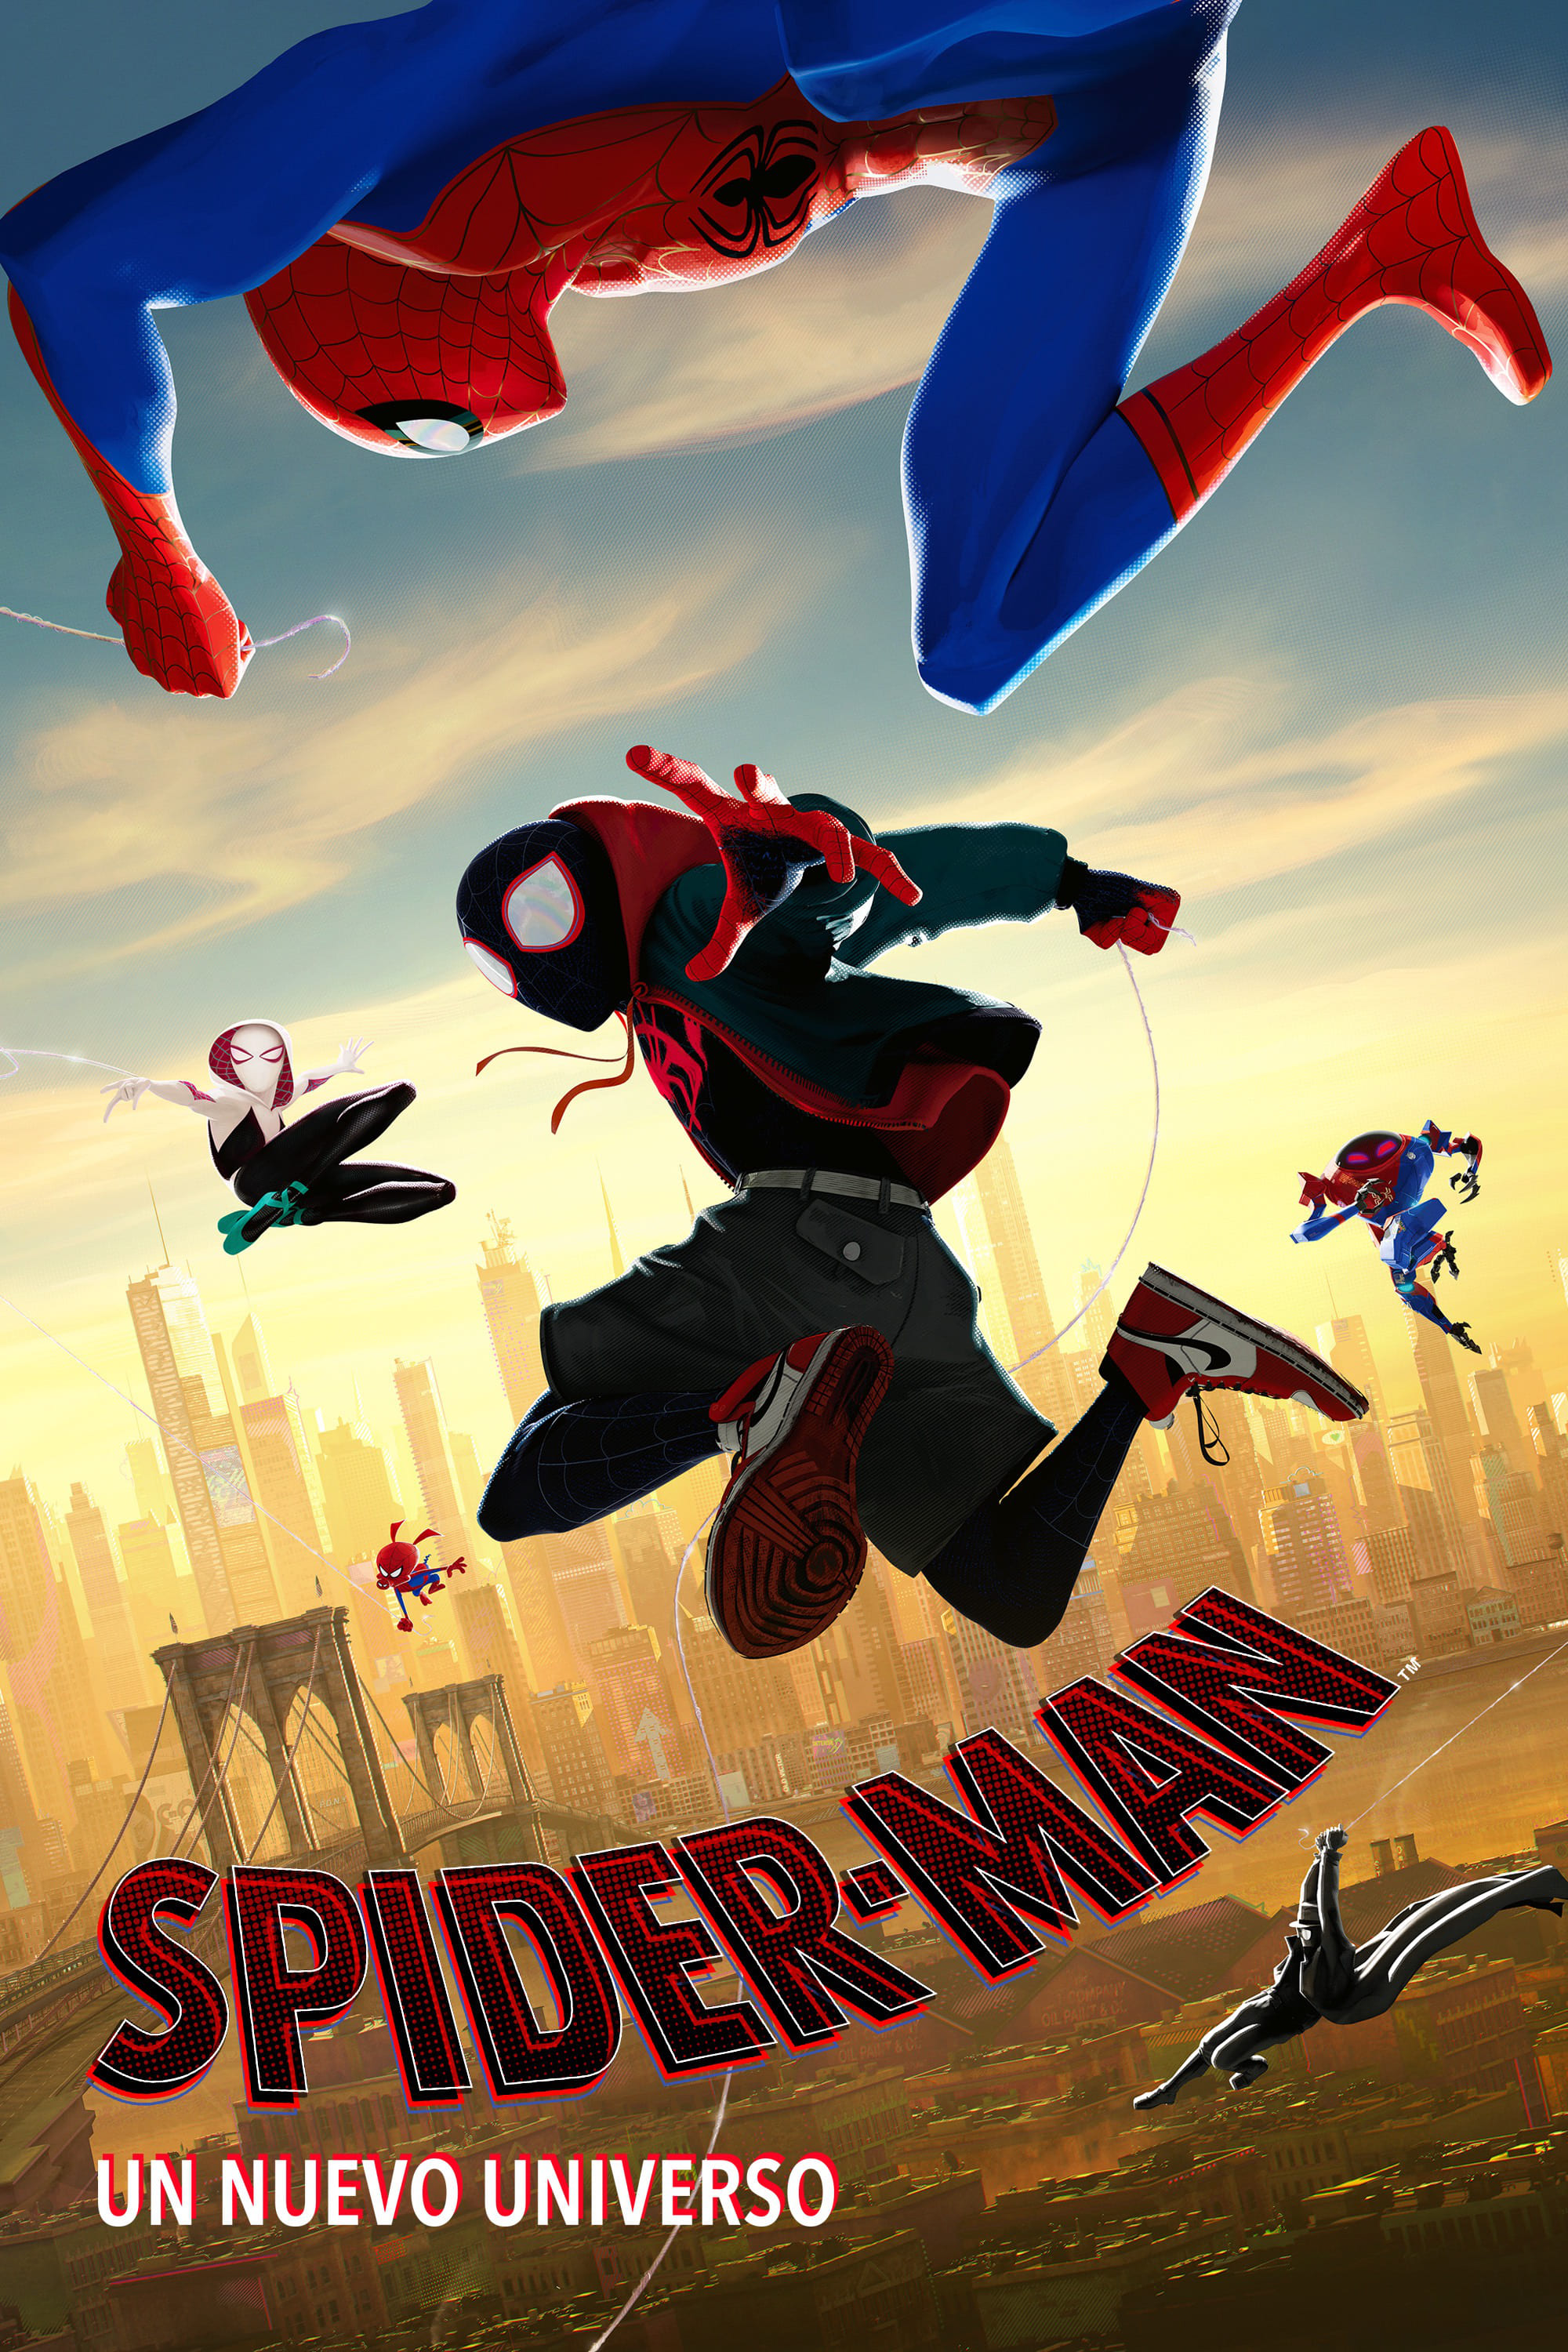 Total 91+ imagen spiderman un nuevo universo doblaje castellano